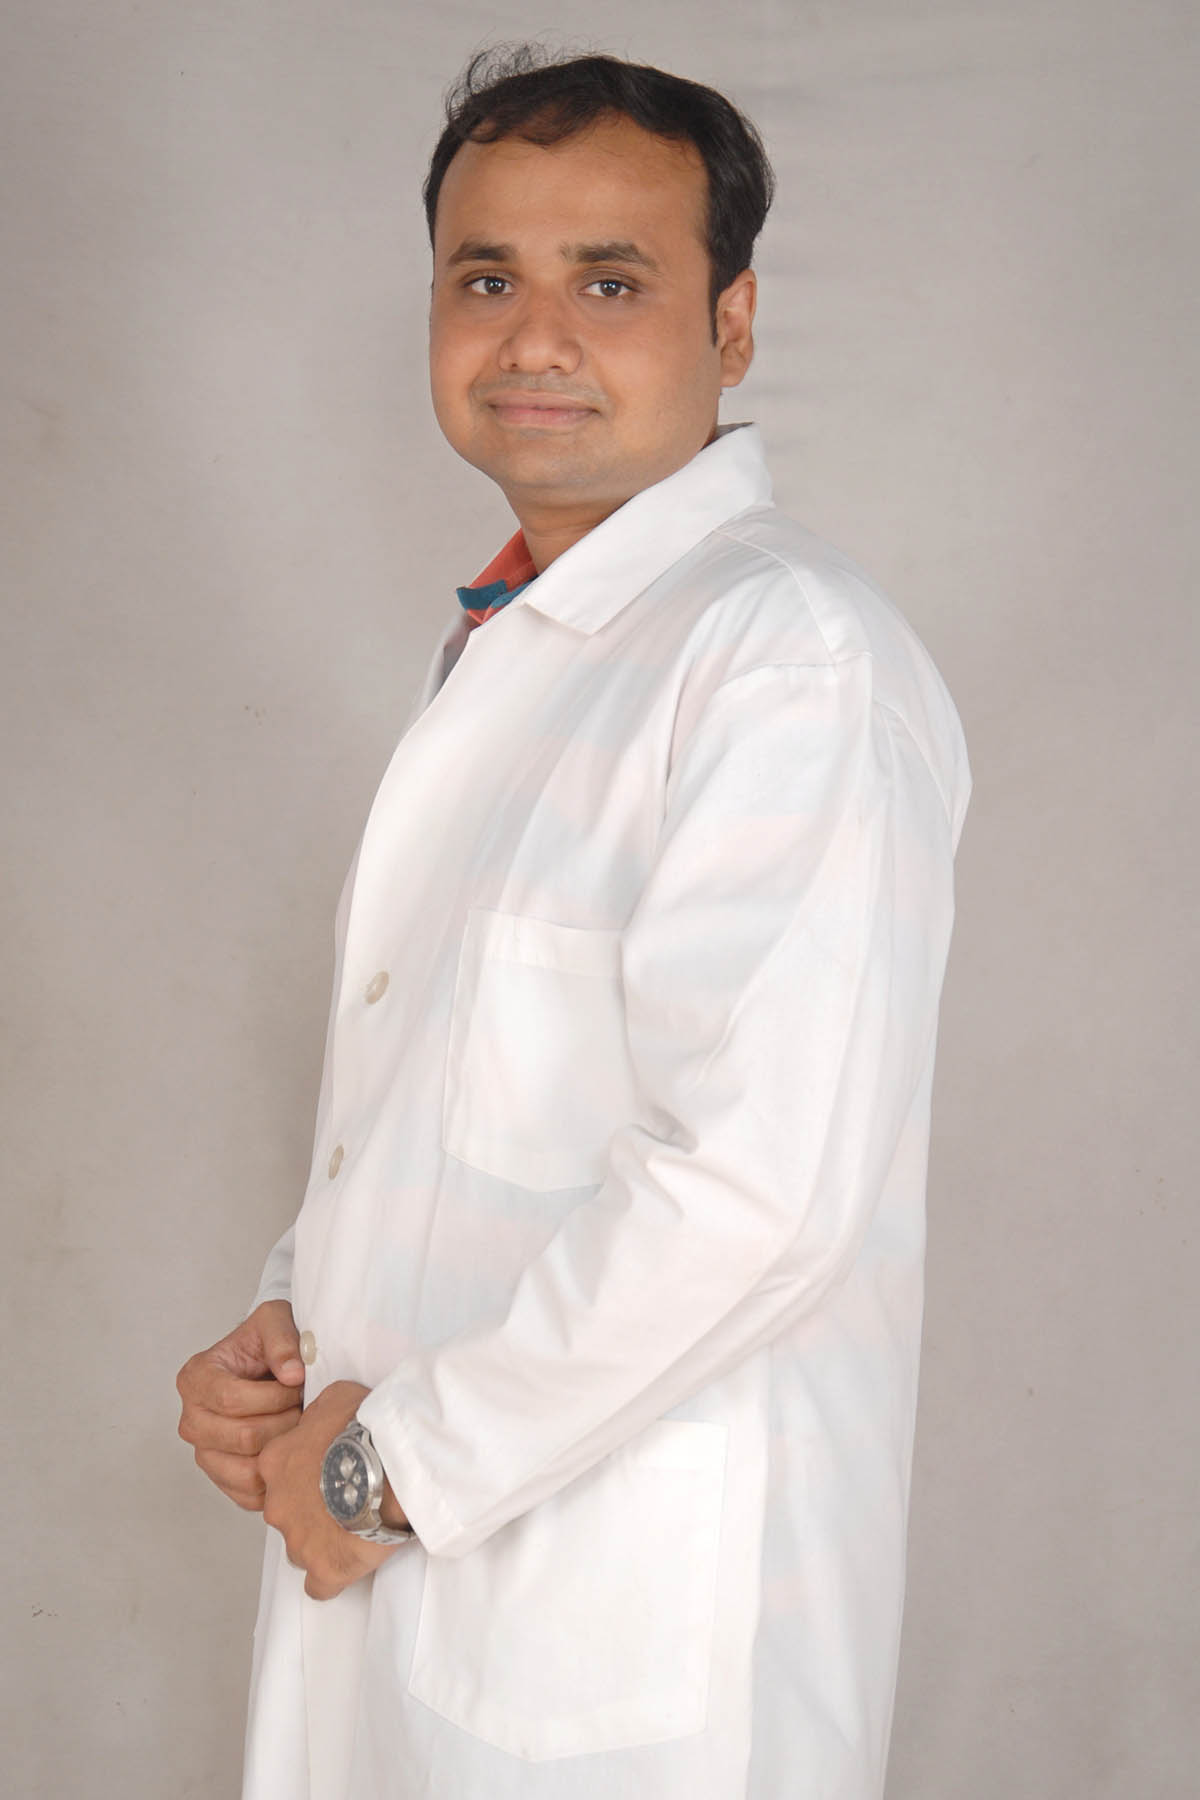 Dr. Keval Shah